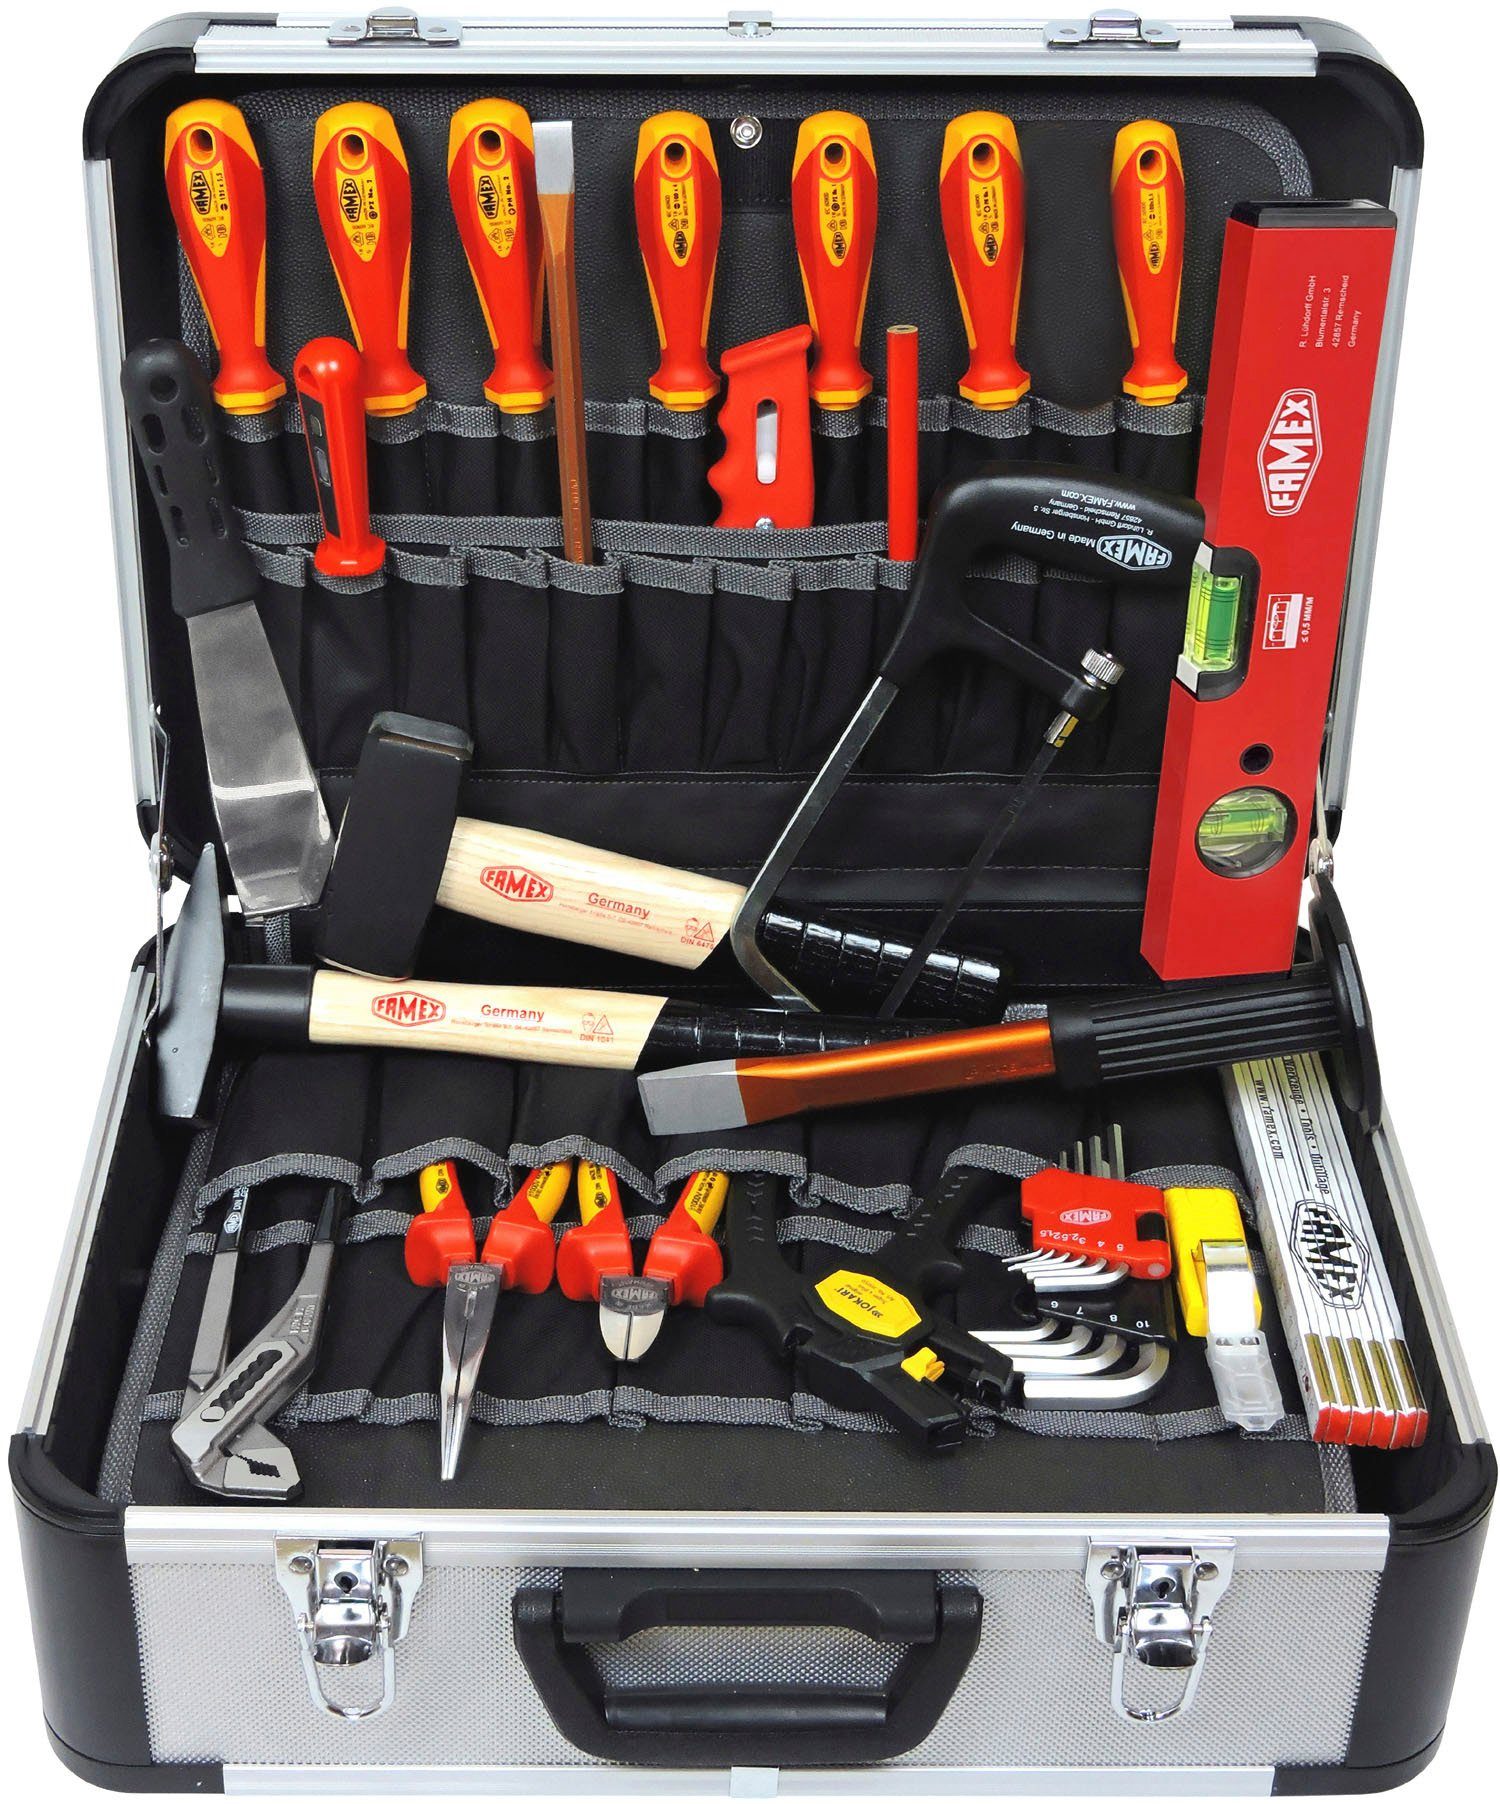 [Serviceverkauf läuft!] FAMEX Werkzeugset 478-10, 31-tlg., Werkzeugkoffer für Elektriker den